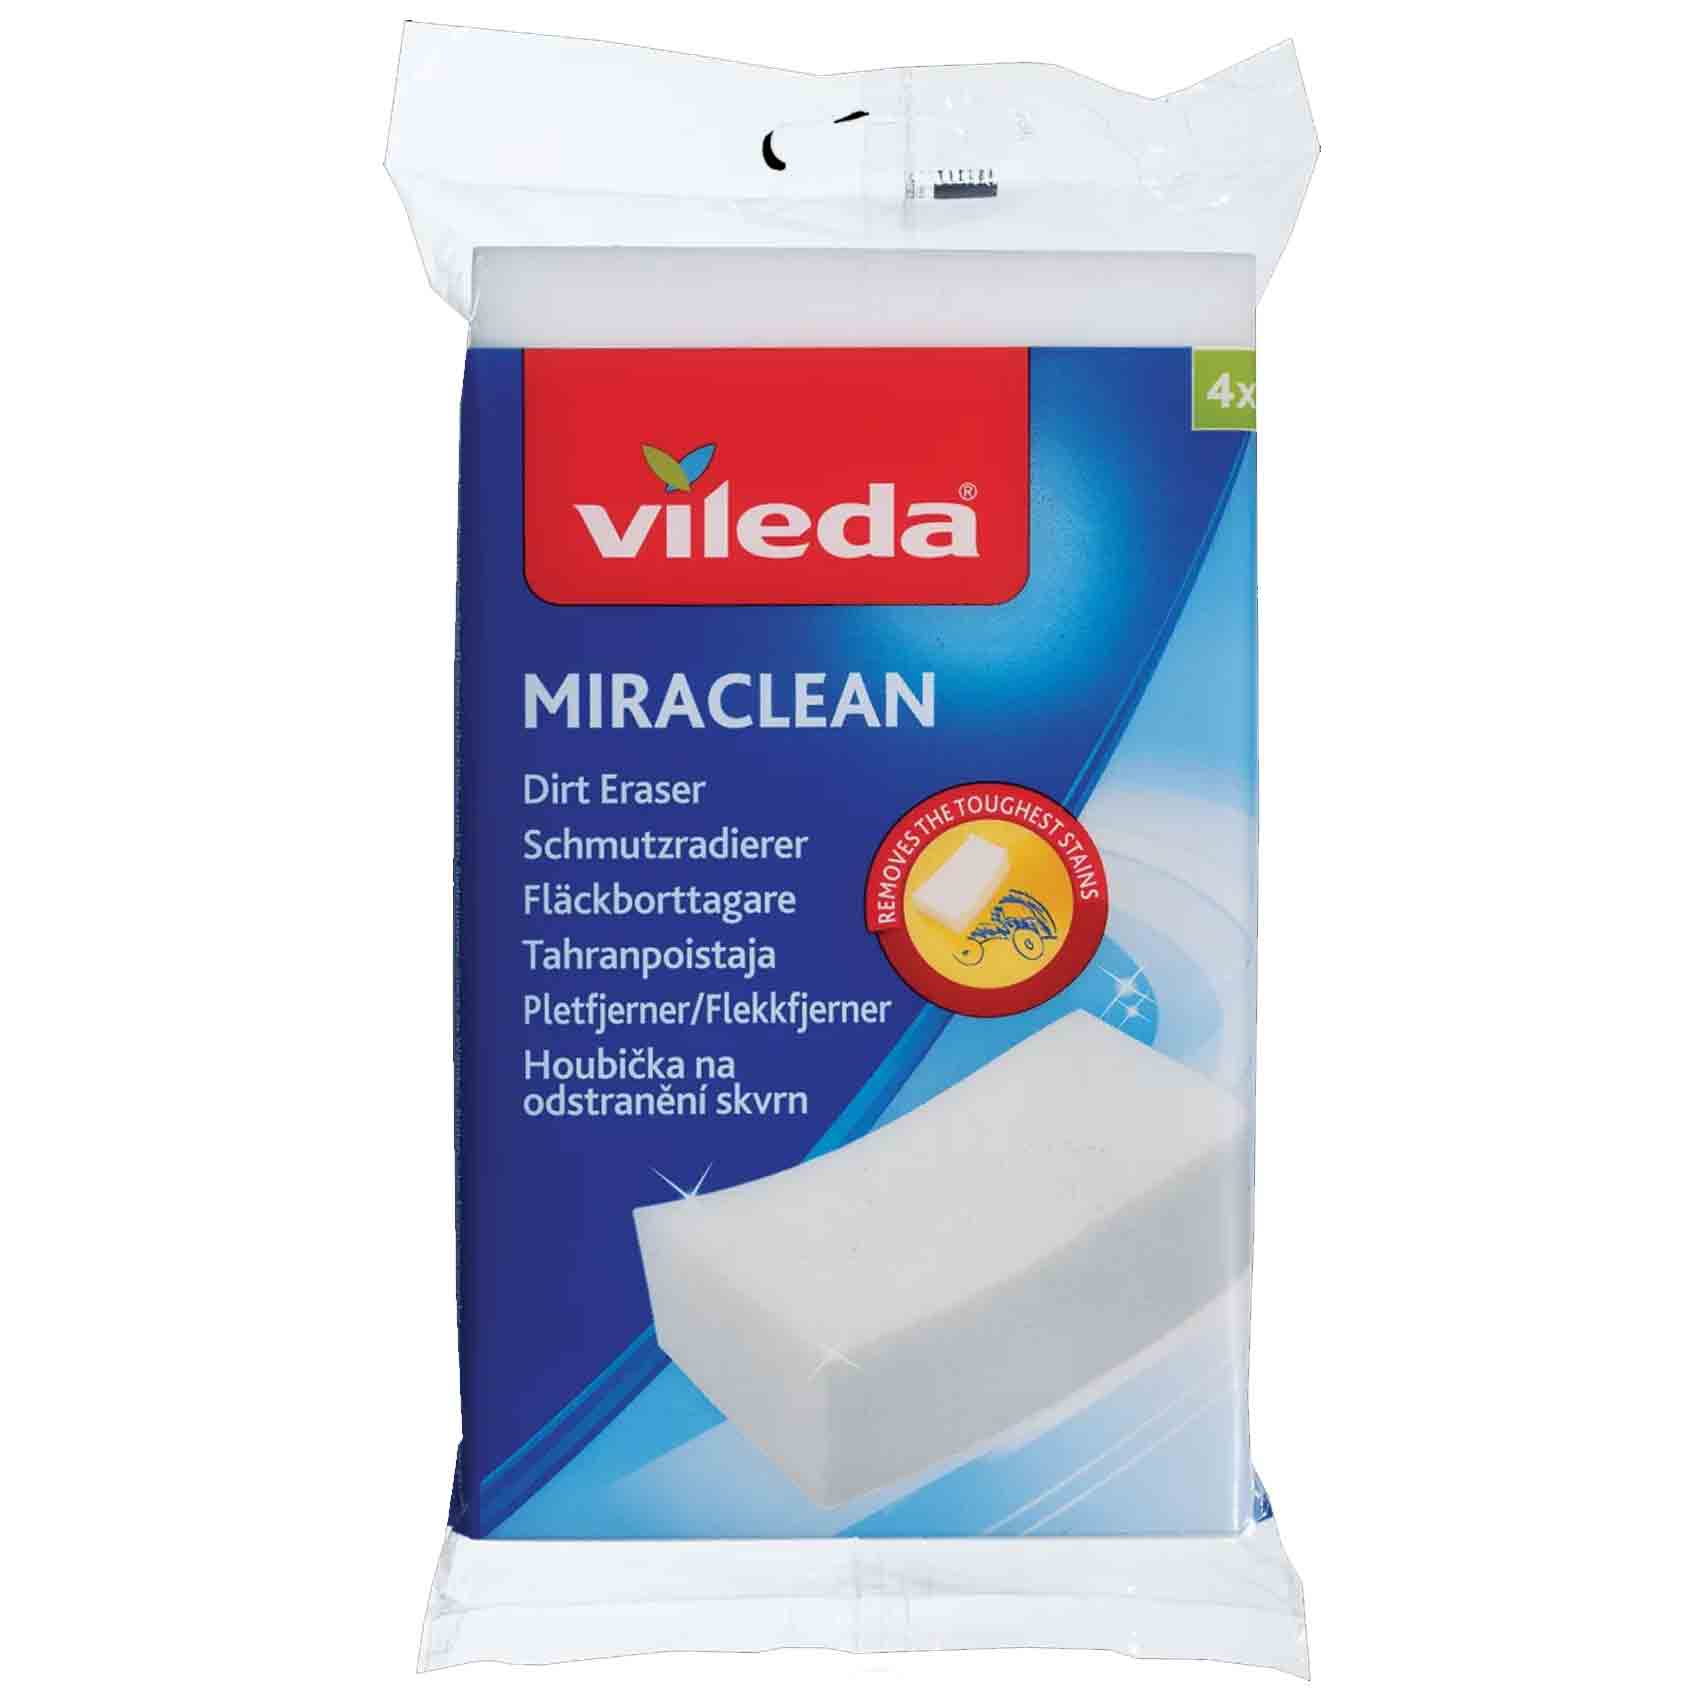 Vileda Mira Clean Stain Eraser 4 Pieces